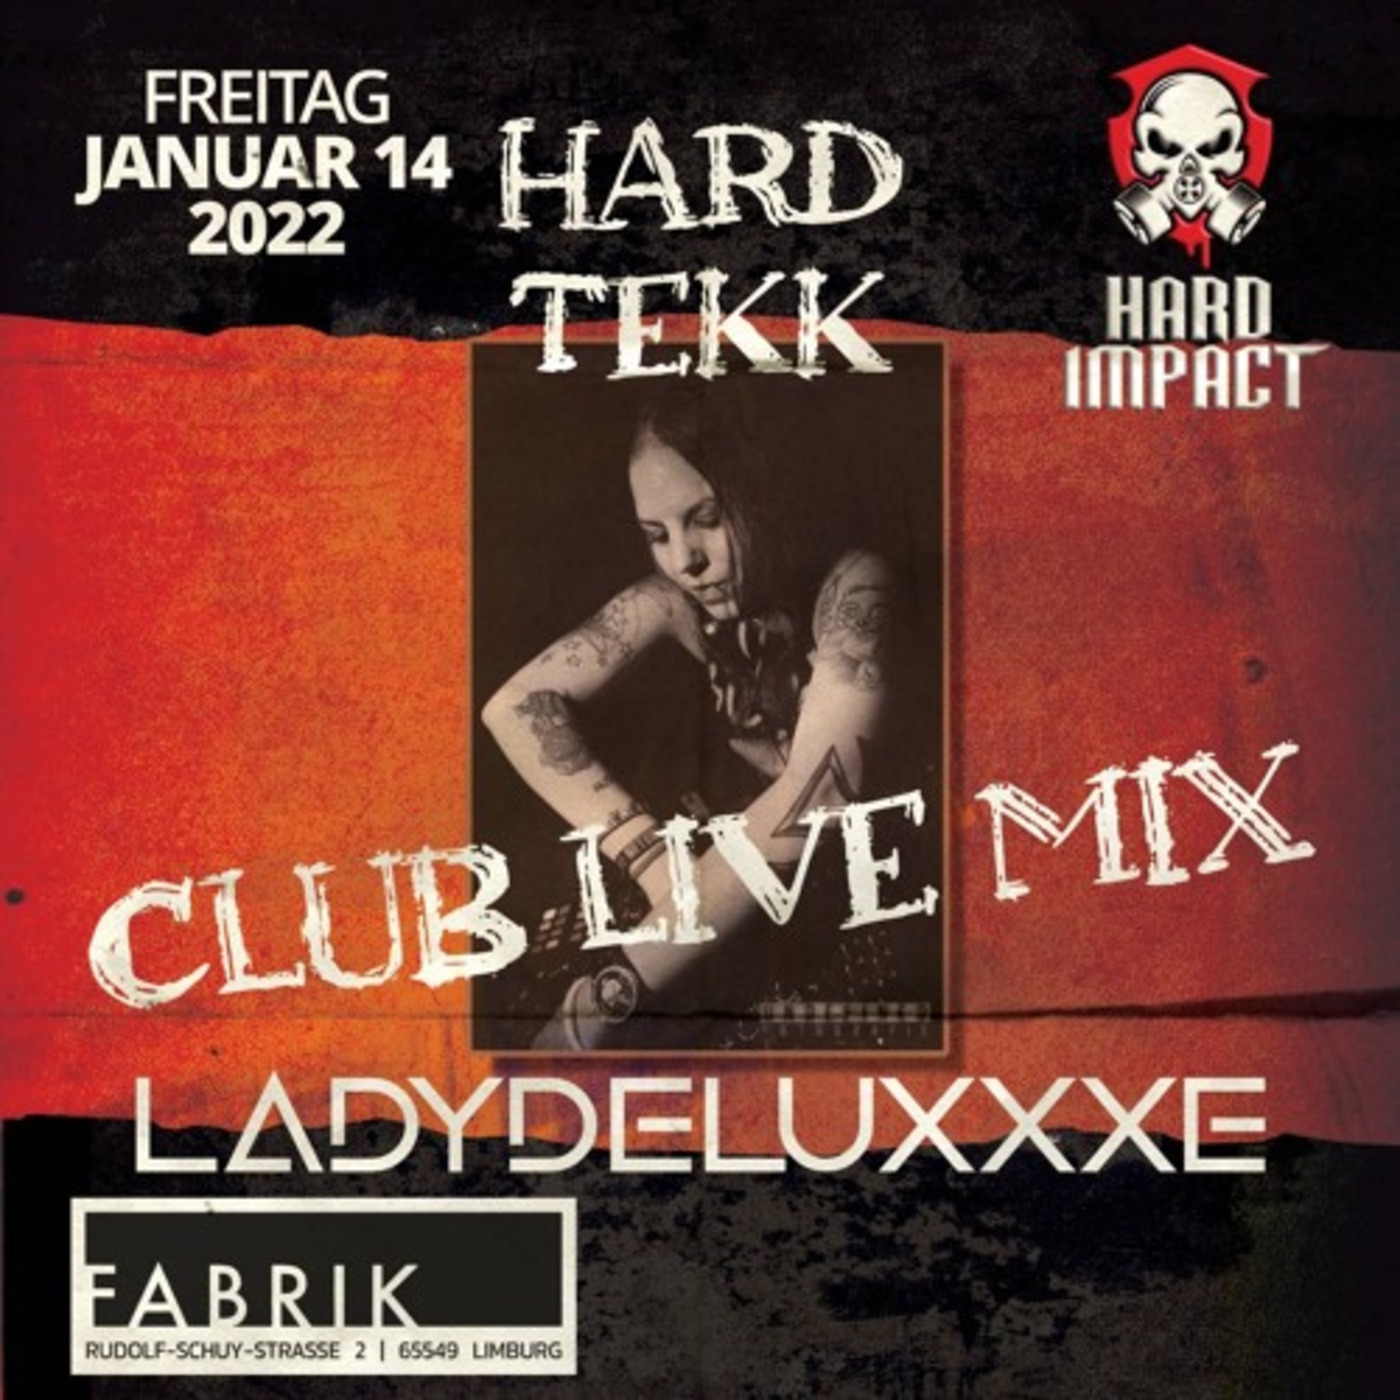 LadydeluxXxe @ Hard Impact | 2022 / Fabrik, Limburg [Club Live Set] // Tekk